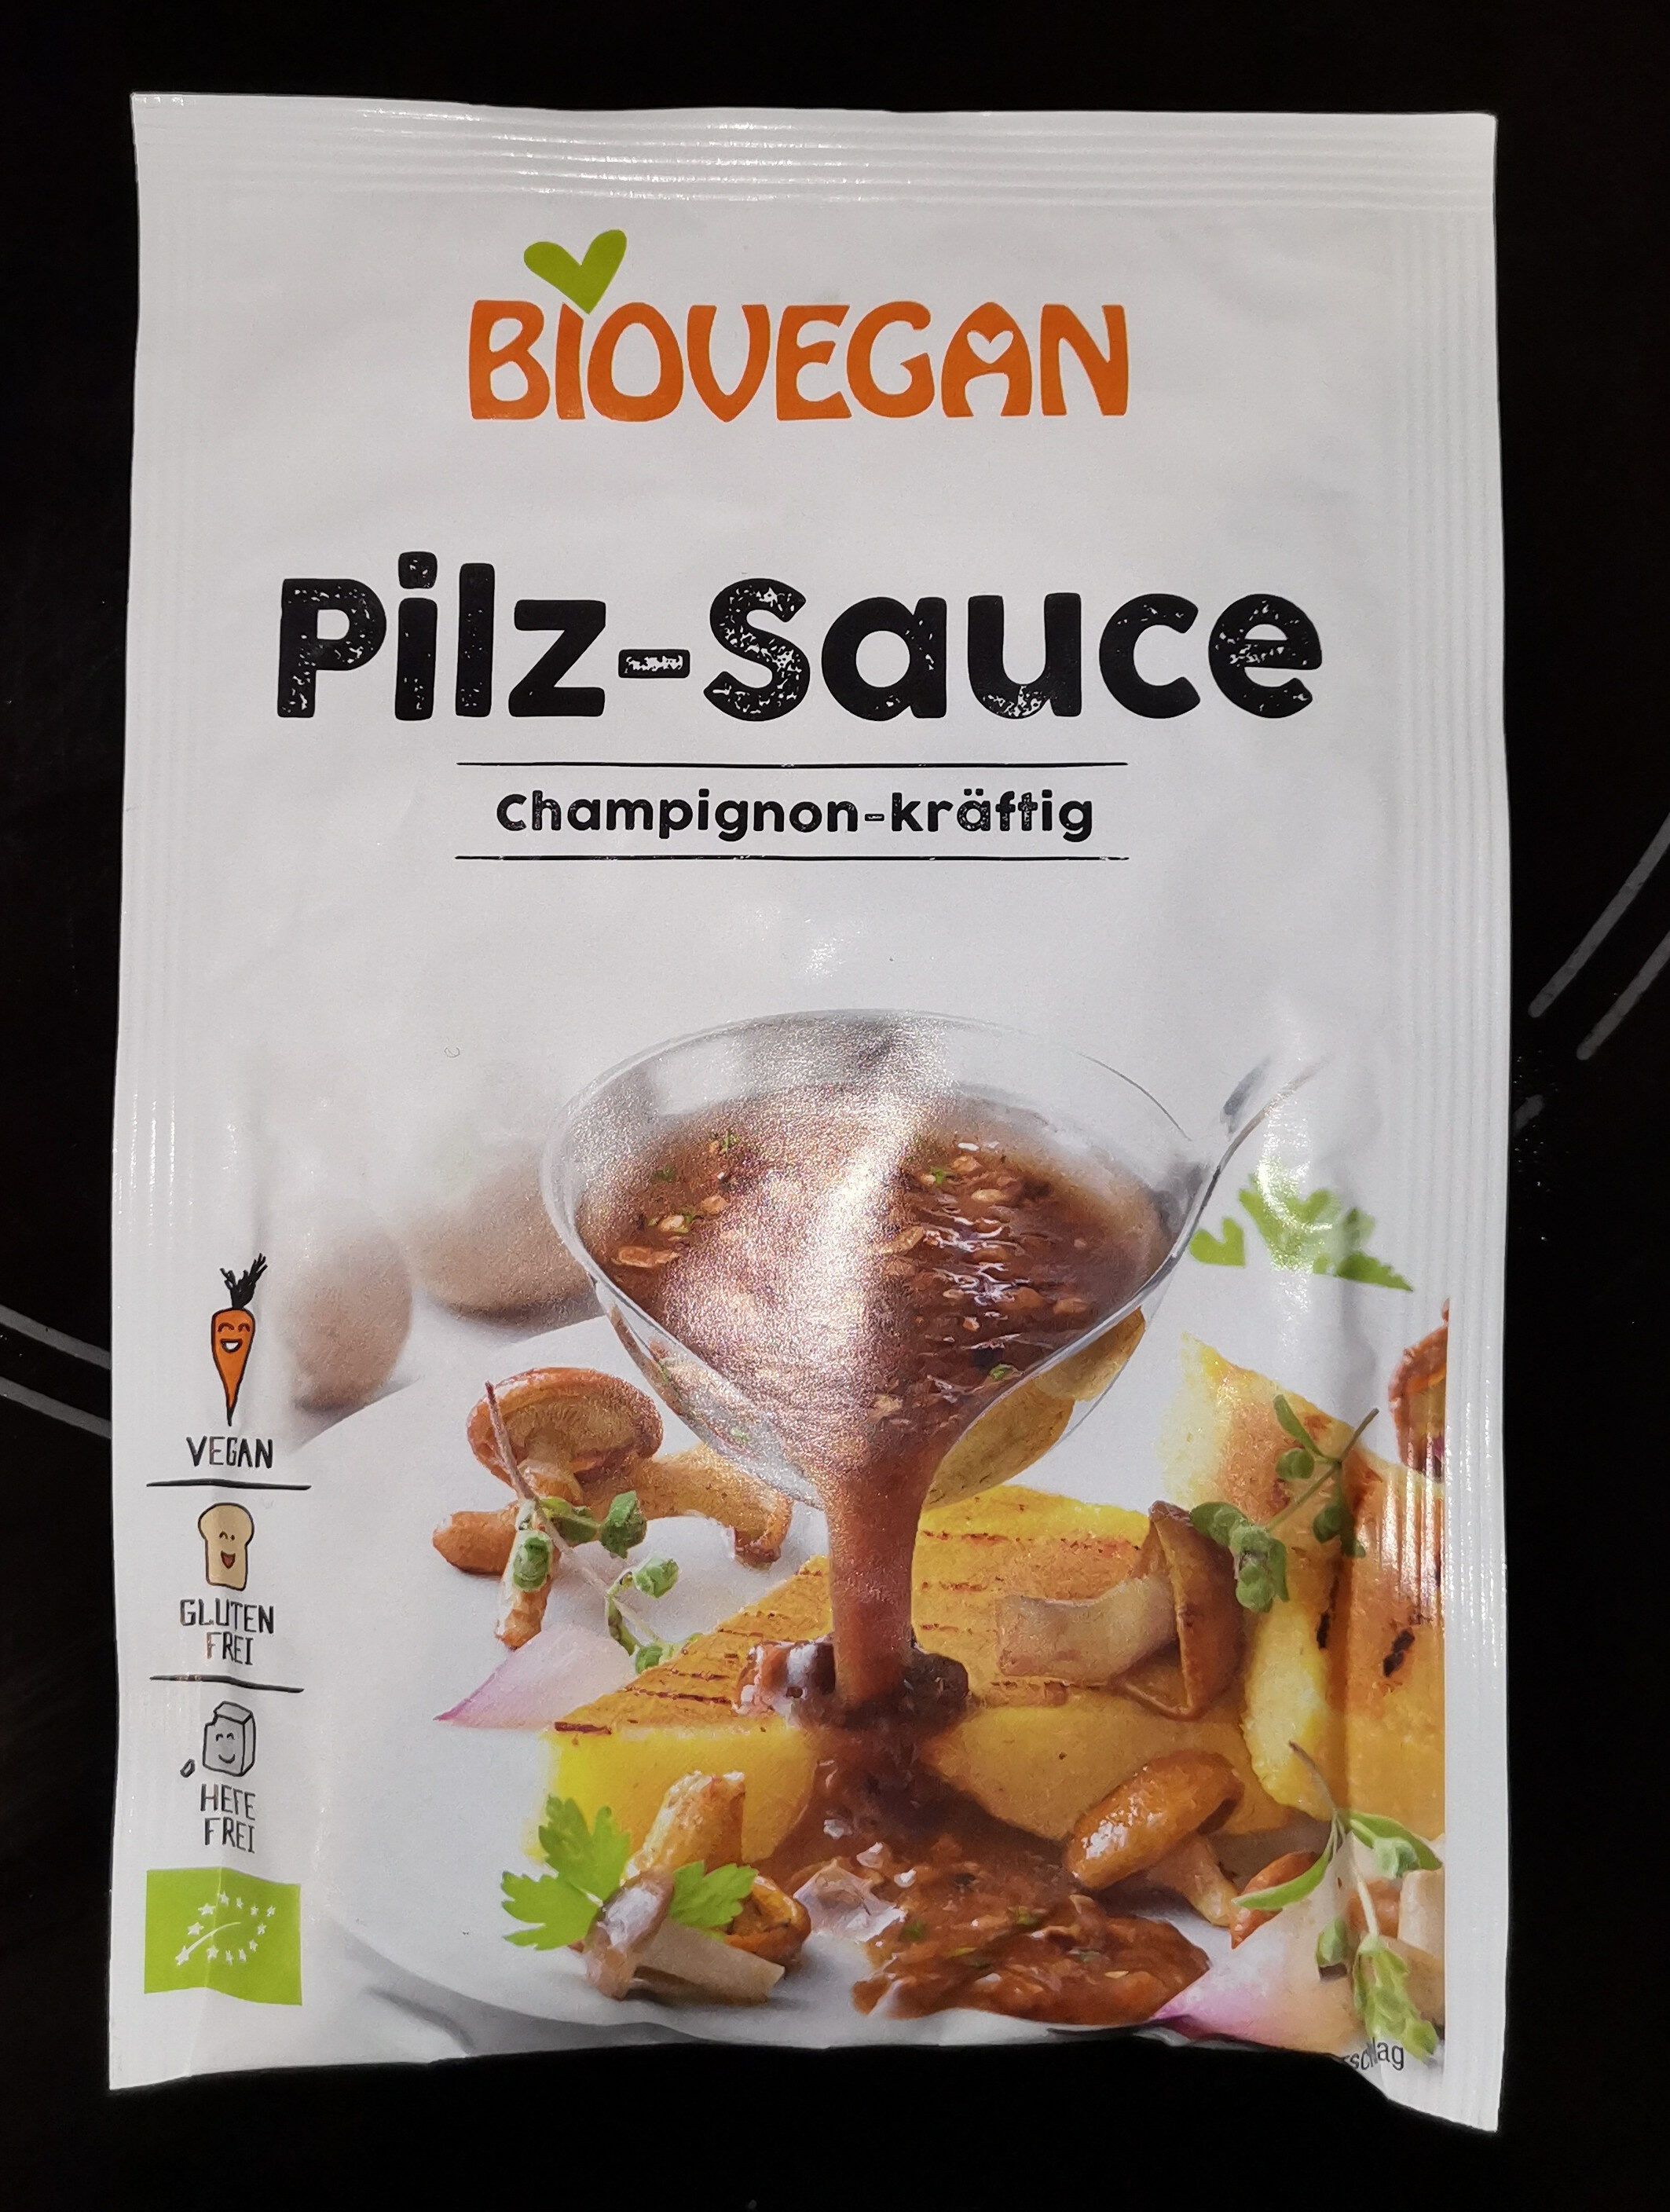 Pilz-sauce champignon-kräftig - Prodotto - de